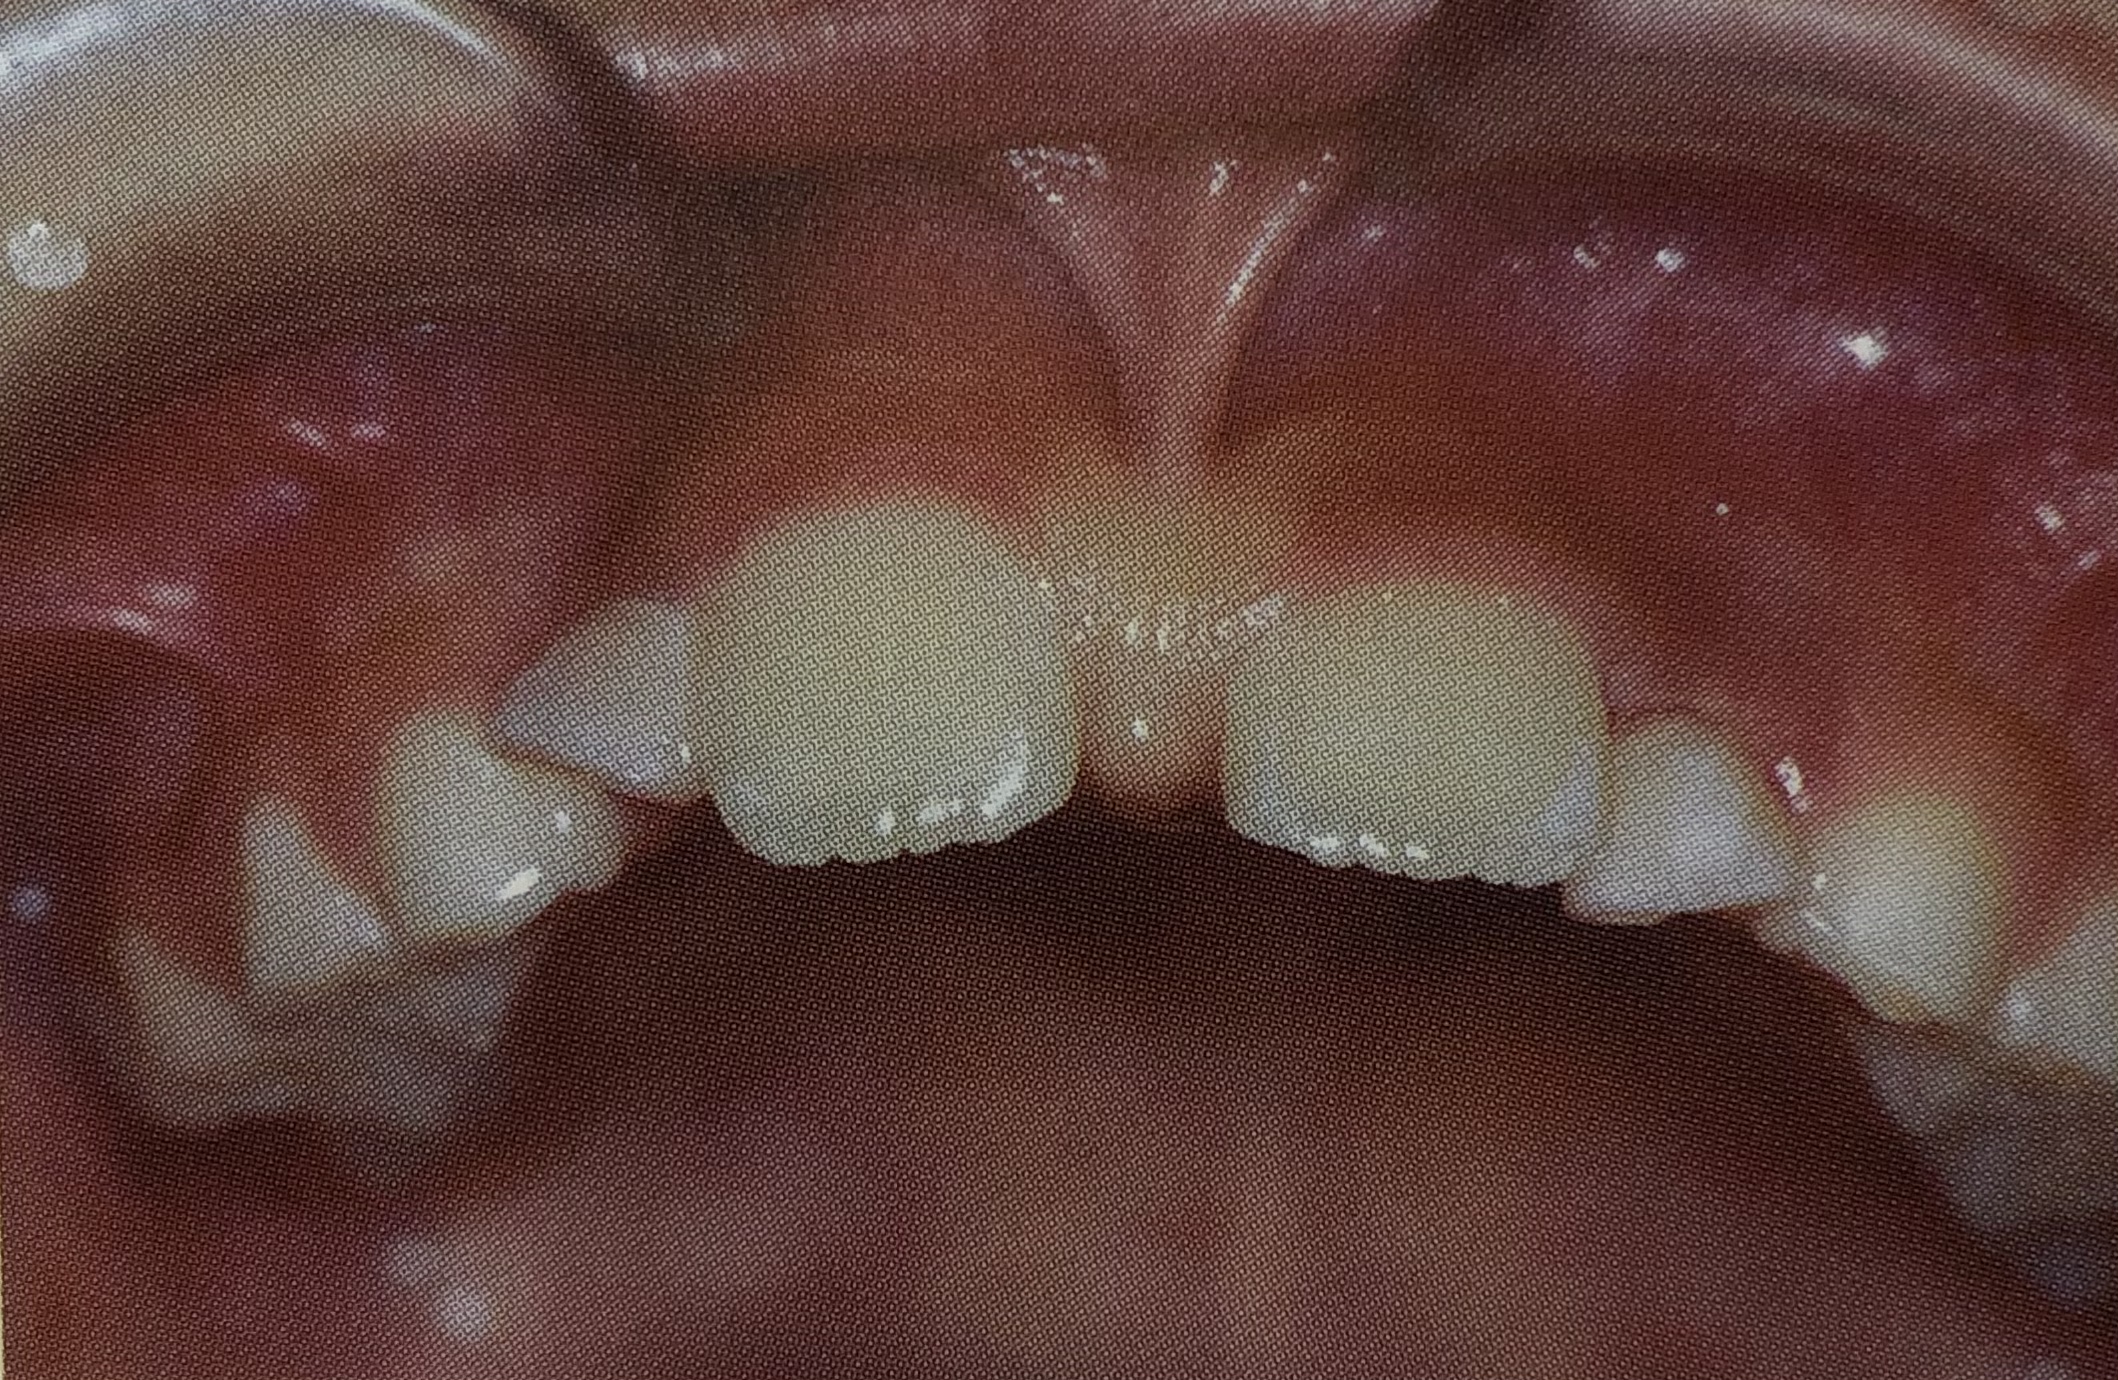 乳歯から永久歯への生えかわりの時期によく見られること